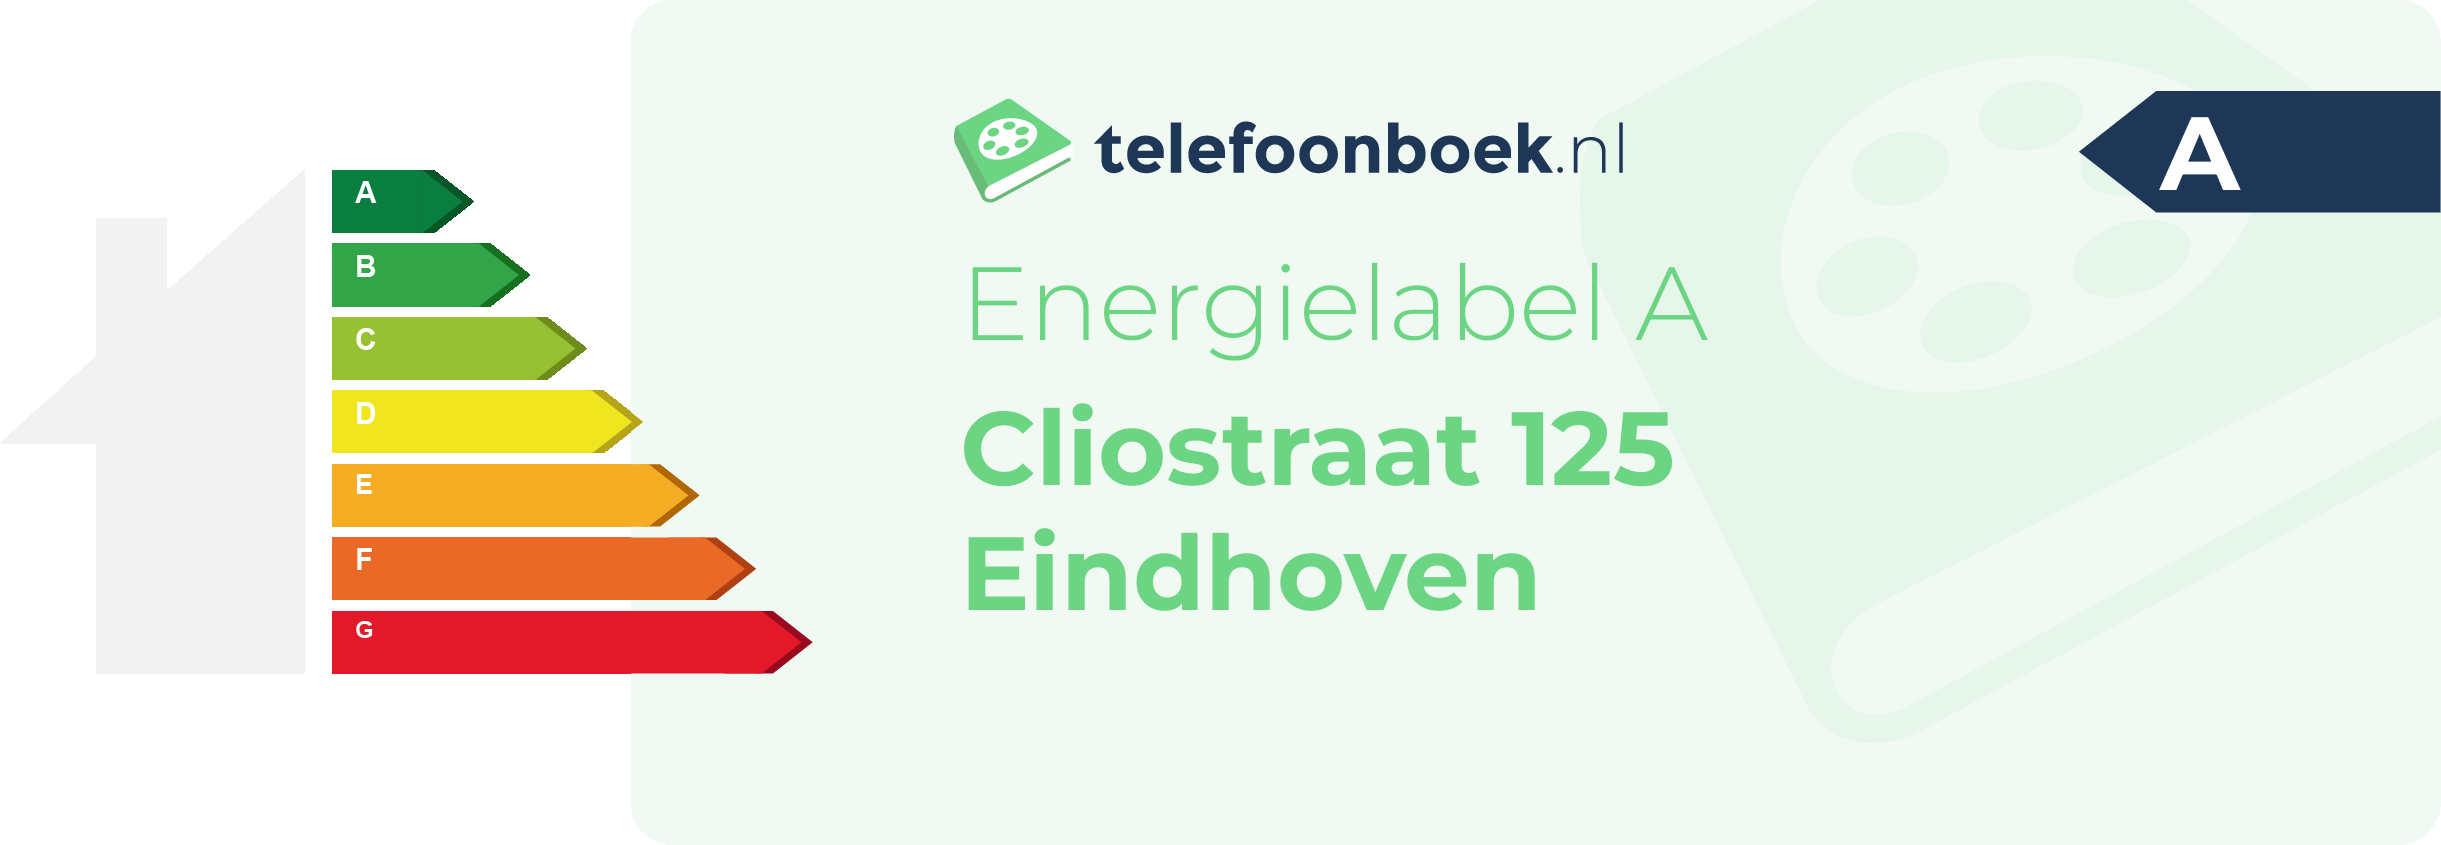 Energielabel Cliostraat 125 Eindhoven